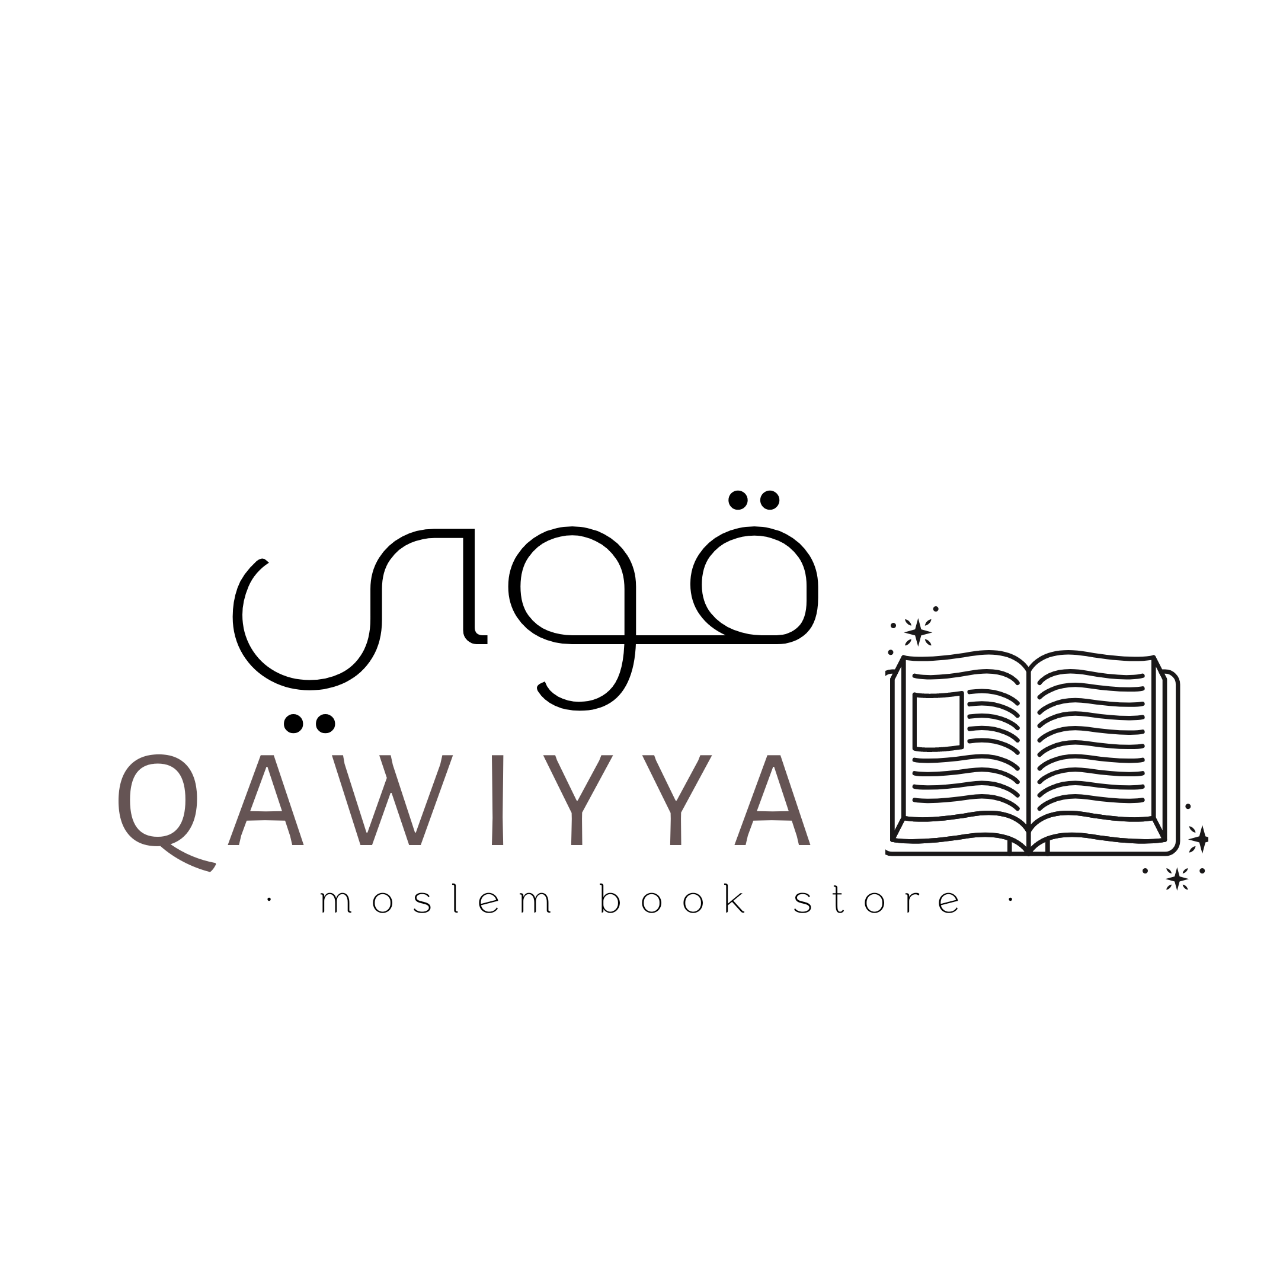 Qawiyya Moslem Book Store